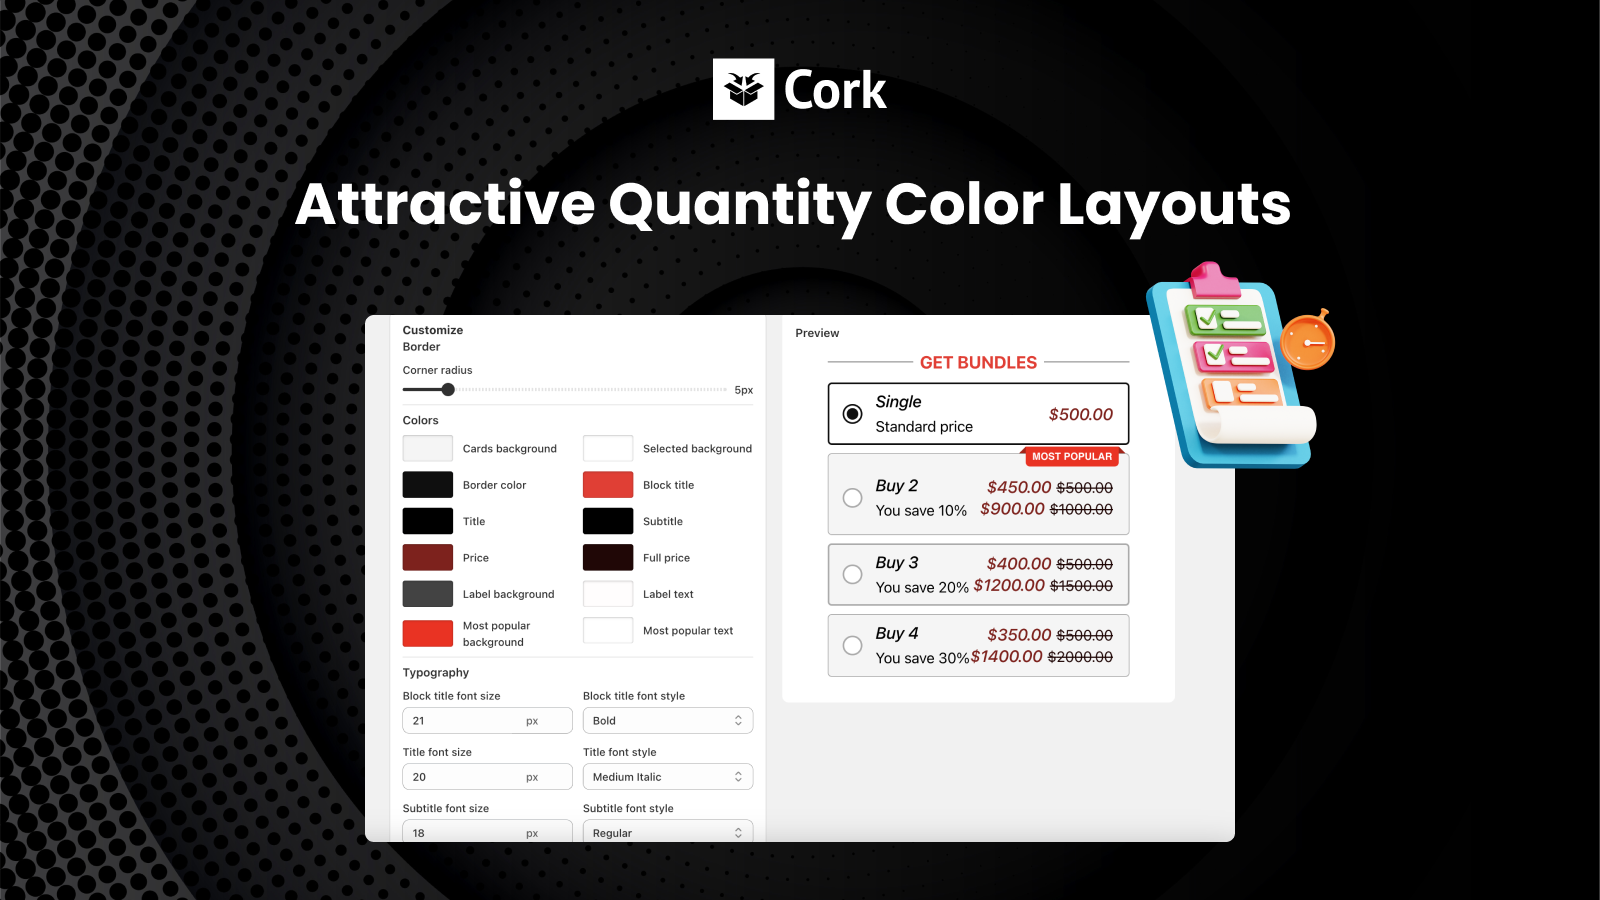  Cork - Produktbündel-App